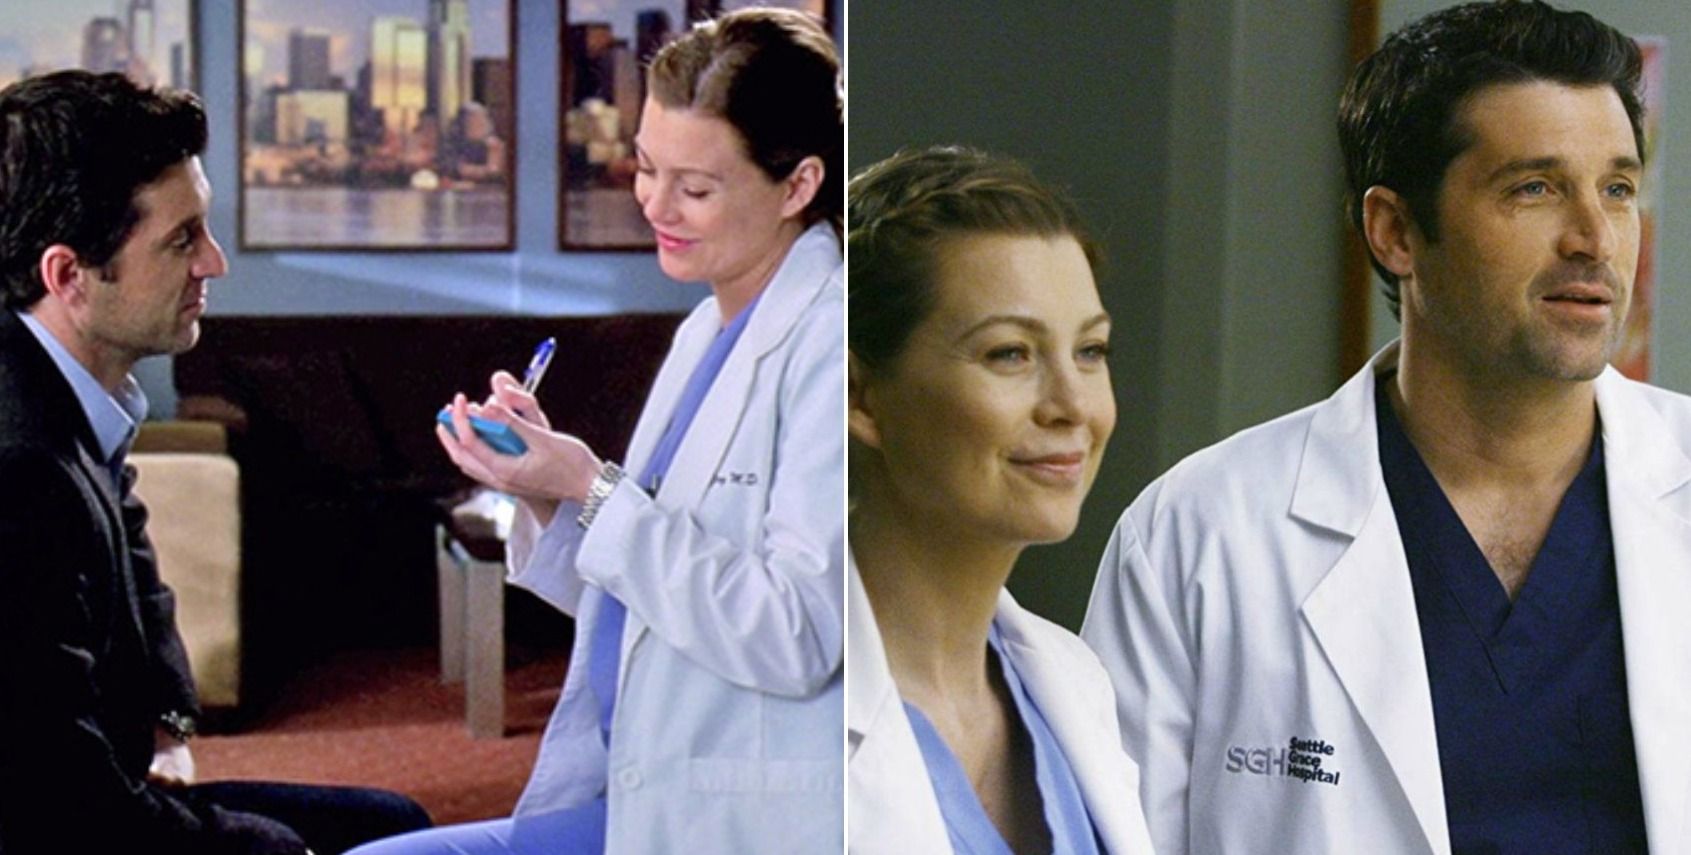 Meredith Grey (Ellen Pompeo) and Derek Shepherd (Patrick Dempsey) in &quot;Grey's Anatomy.&quot;